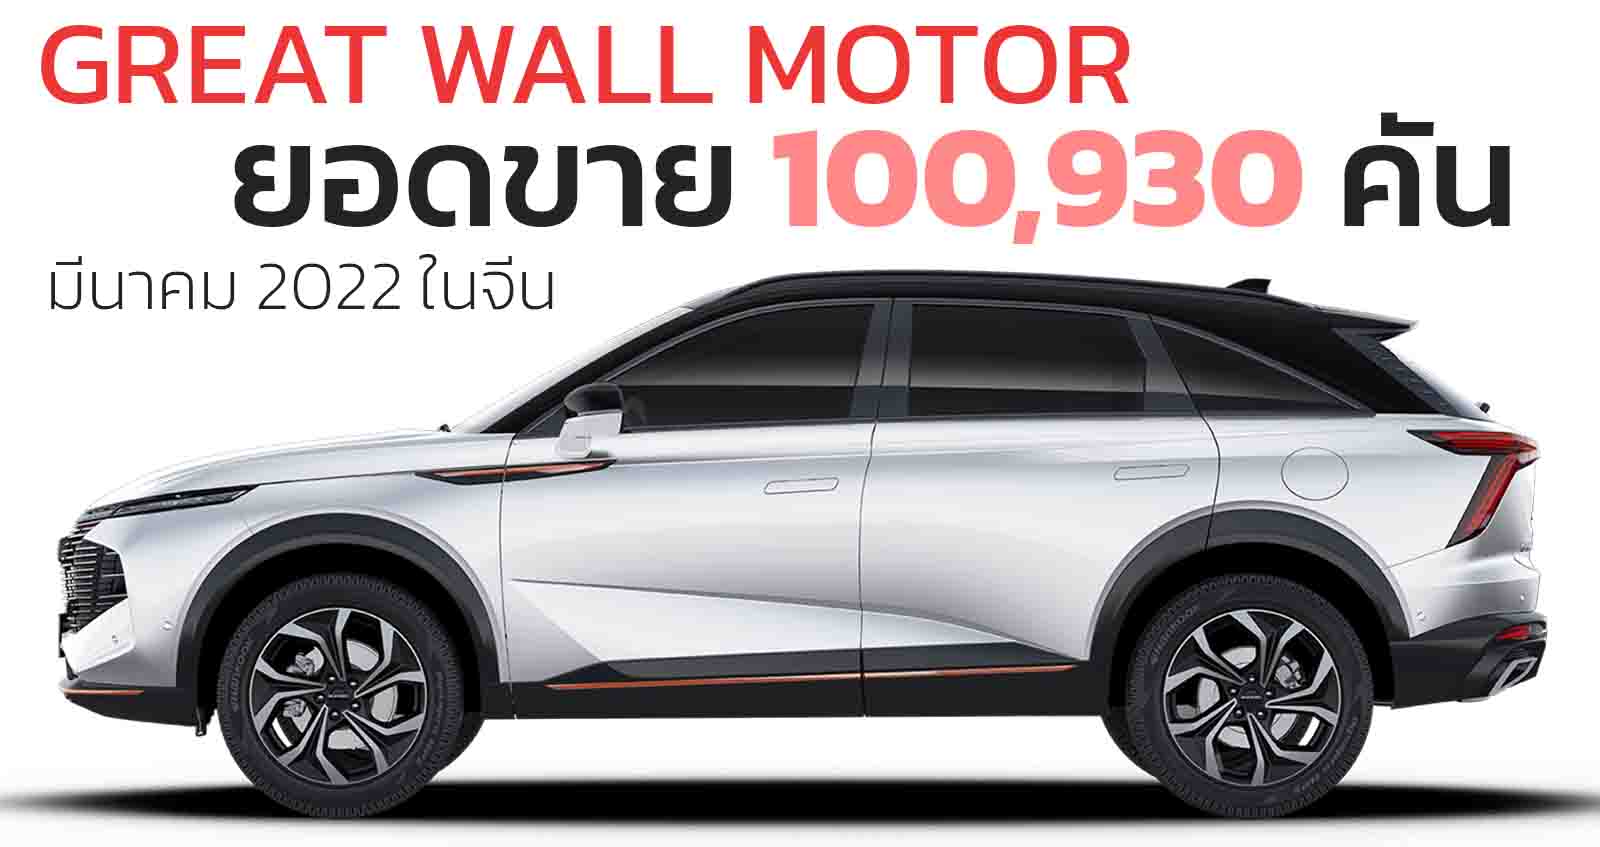 ยอดขาย 100,930 คัน Great Wall Motor มีนาคม 2022 ในประเทศจีน